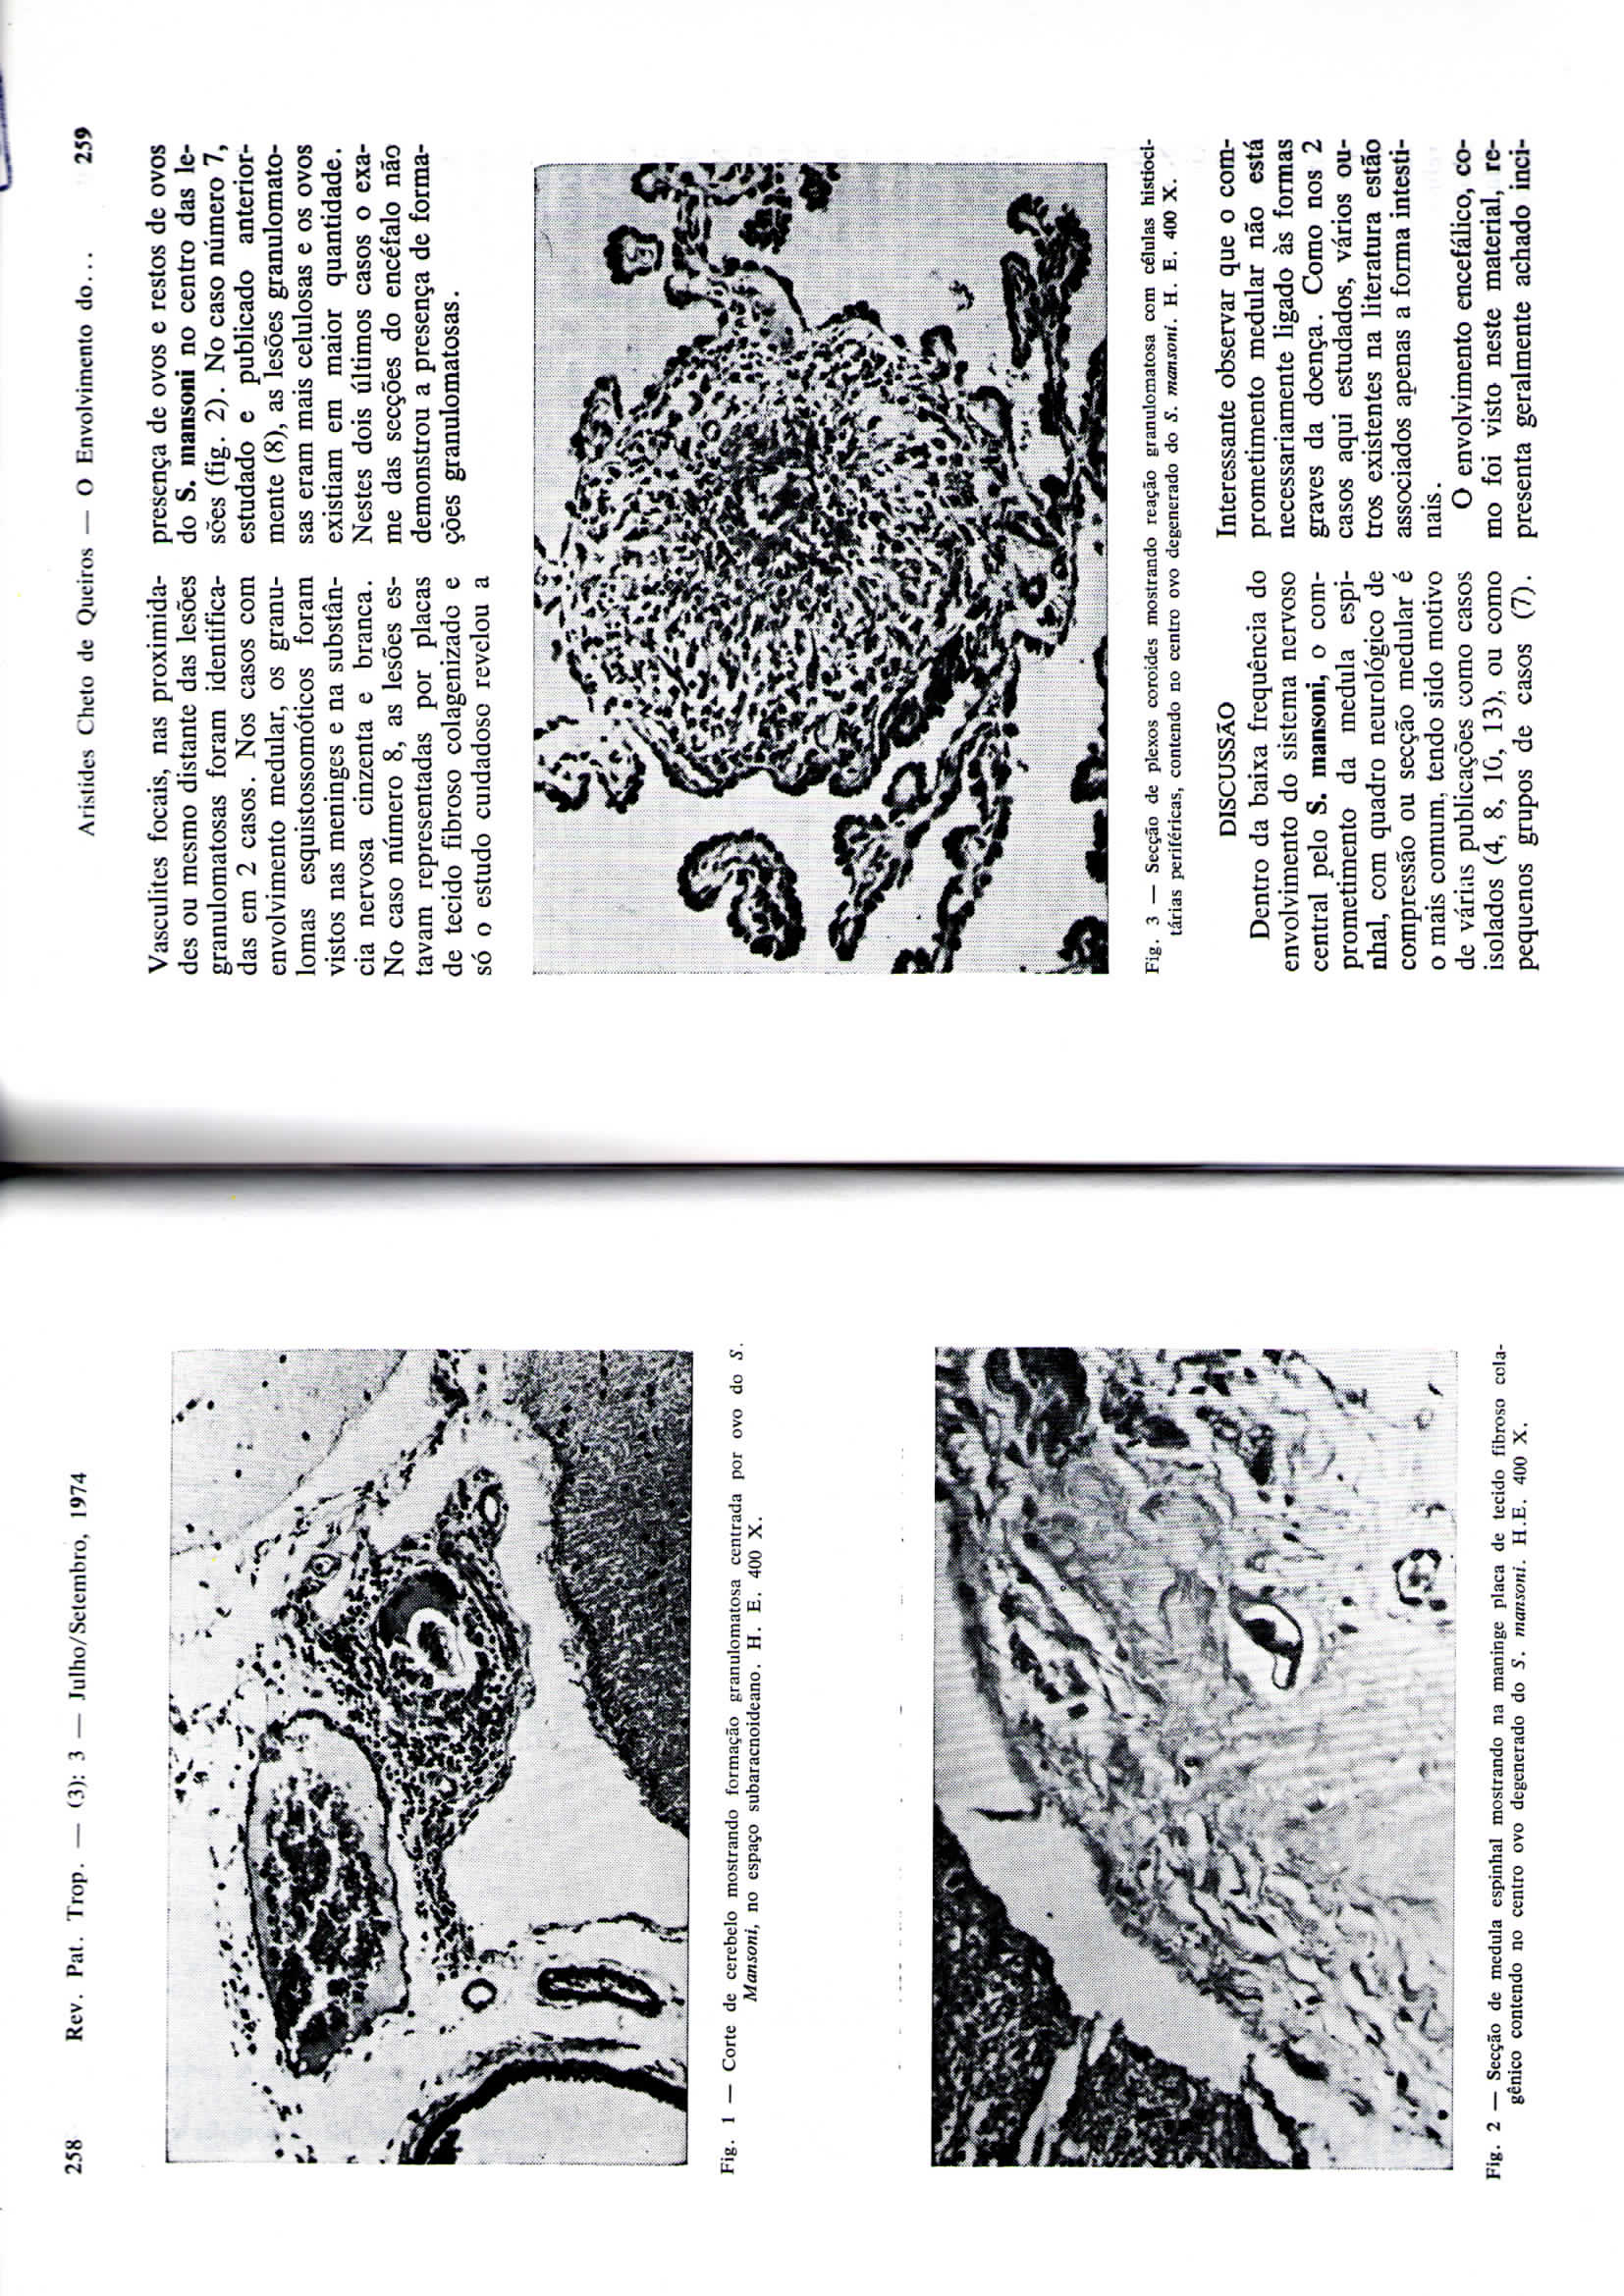 258 Rcv. Pat. Trop. (3): 3 Julho/Sctcmbro. 1974 Cheio de Queirós O Envolvimento do... 259 Vasculitcs focais, nas proximidades ou mesmo distante das lesões granulomatosas foram identificadas em 2 casos.